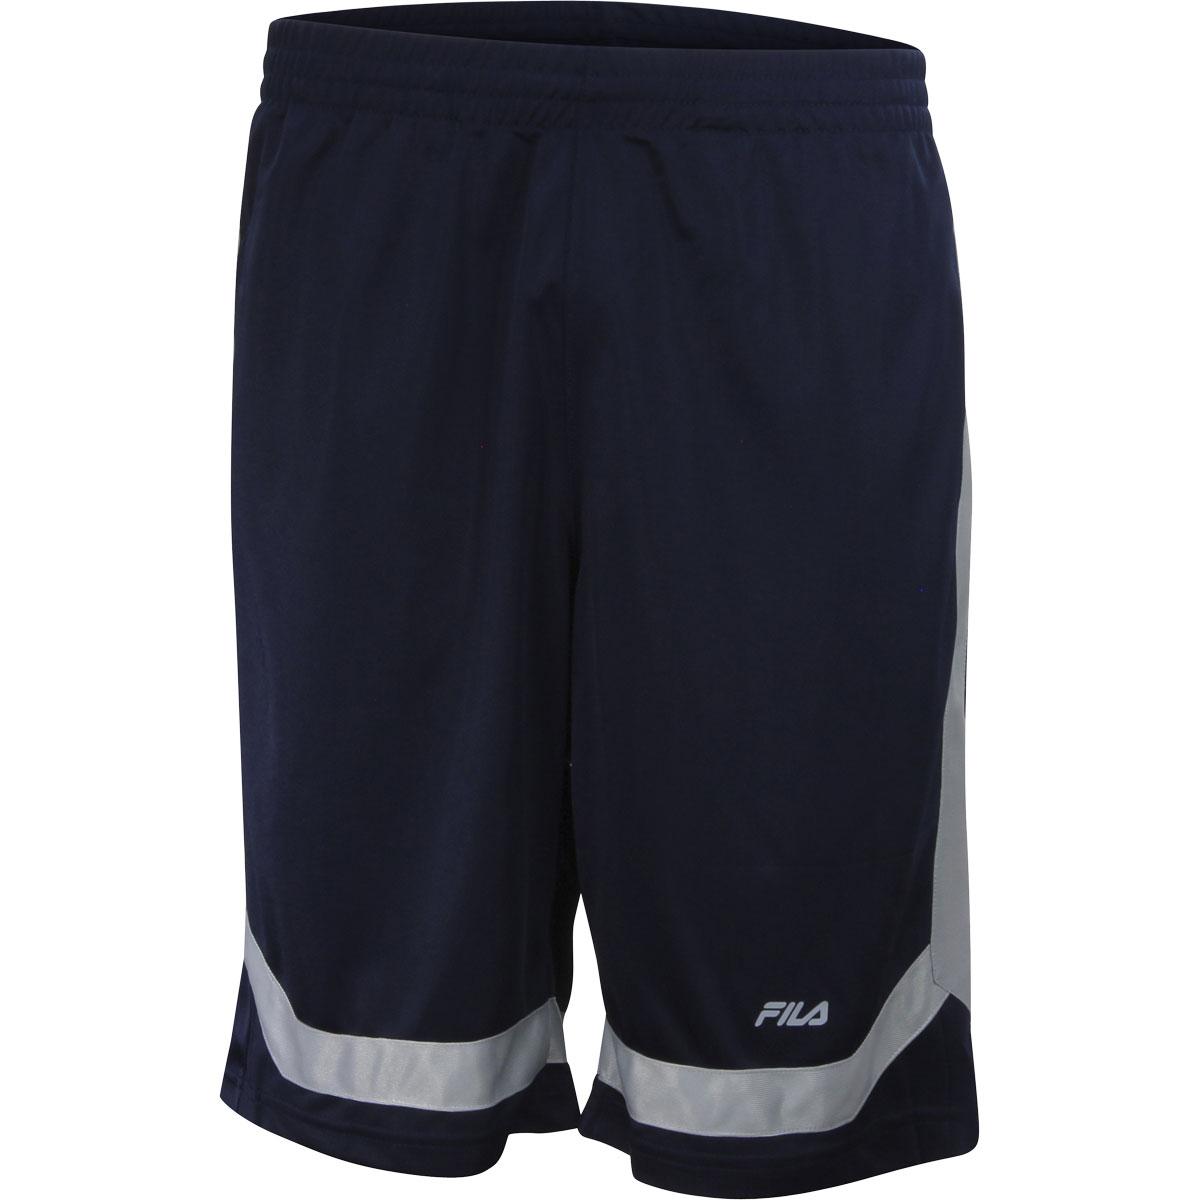 Fila Men's Circuit Drawstring Shorts - Navy/Highrise - X Large